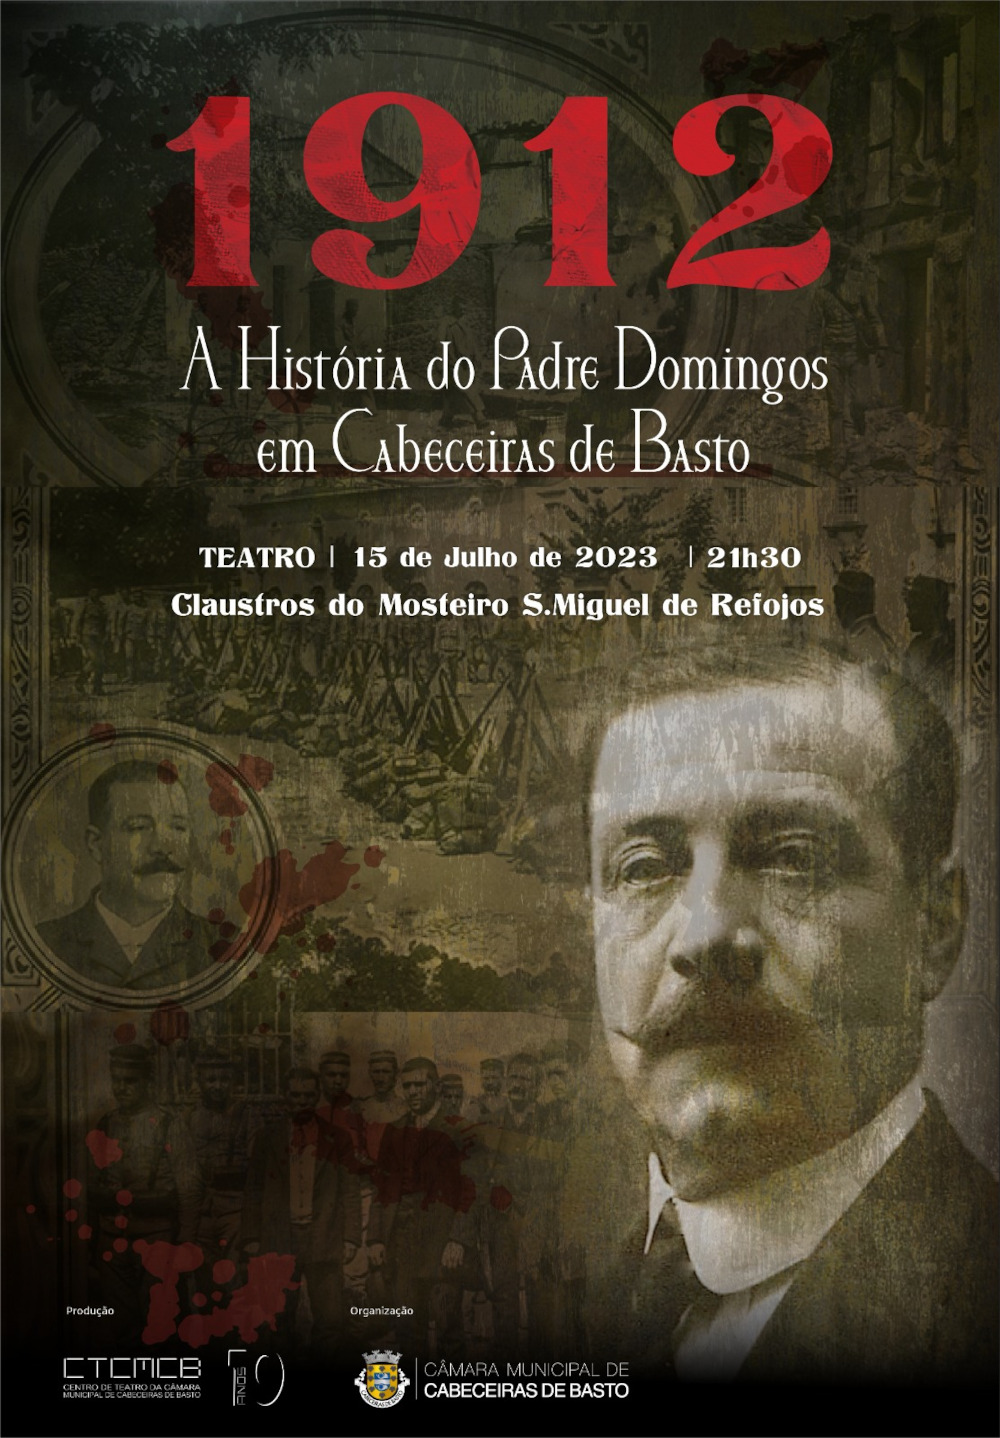 Teatro «1912 - A História do Padre Domingos»